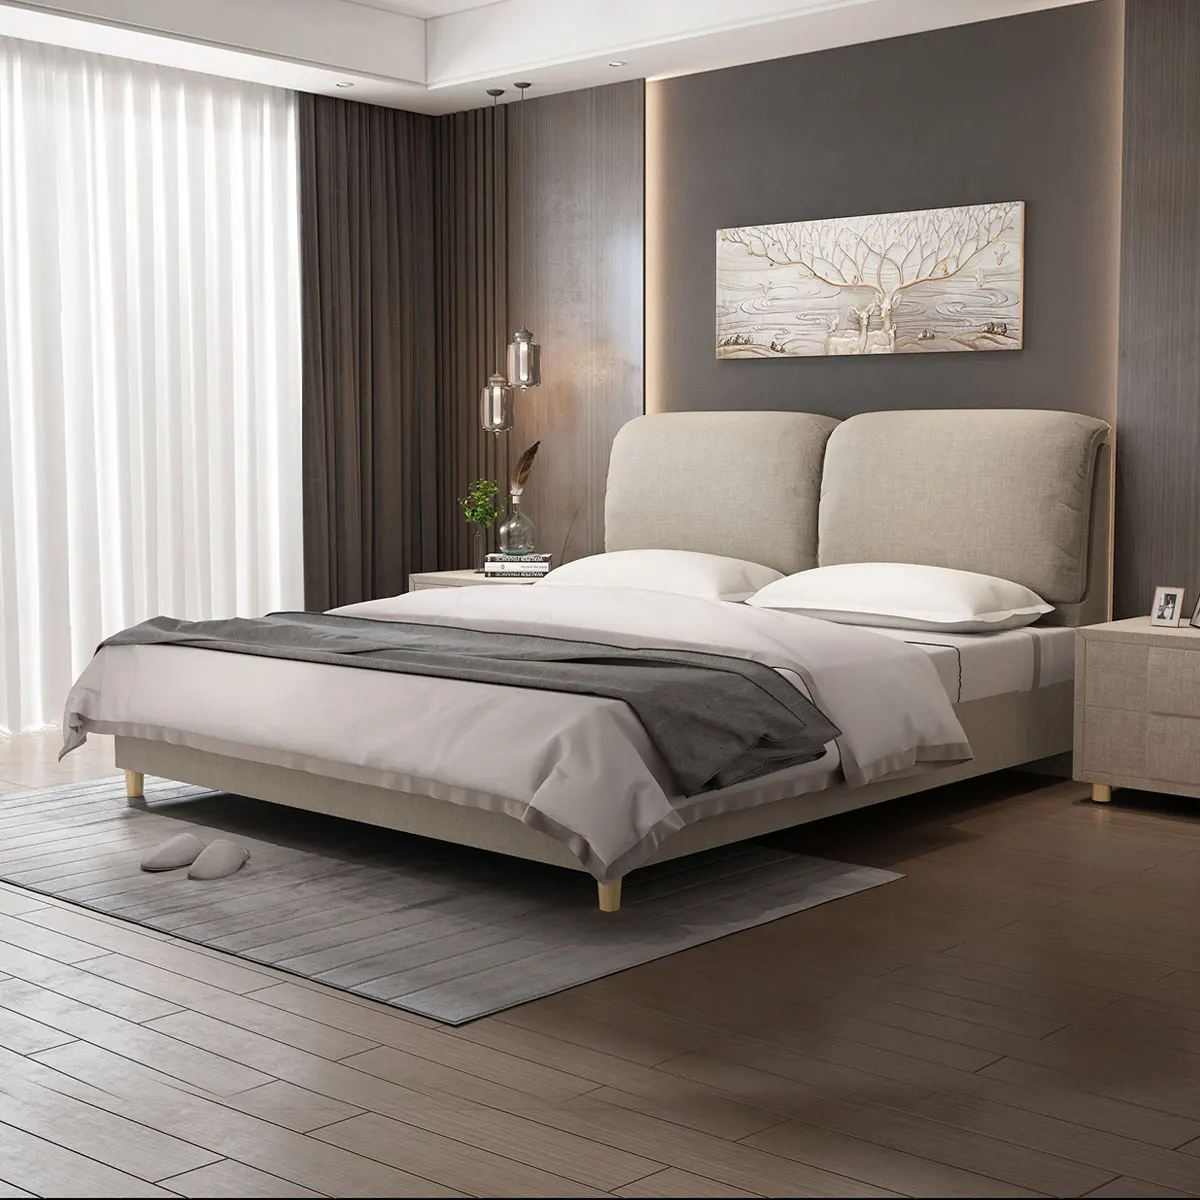 RAMA DYMASTY модный тканевый мягкий для кровати Современный дизайн кровать bett, cama модный king/queen Размер мебель для спальни - Цвет: Темный хаки